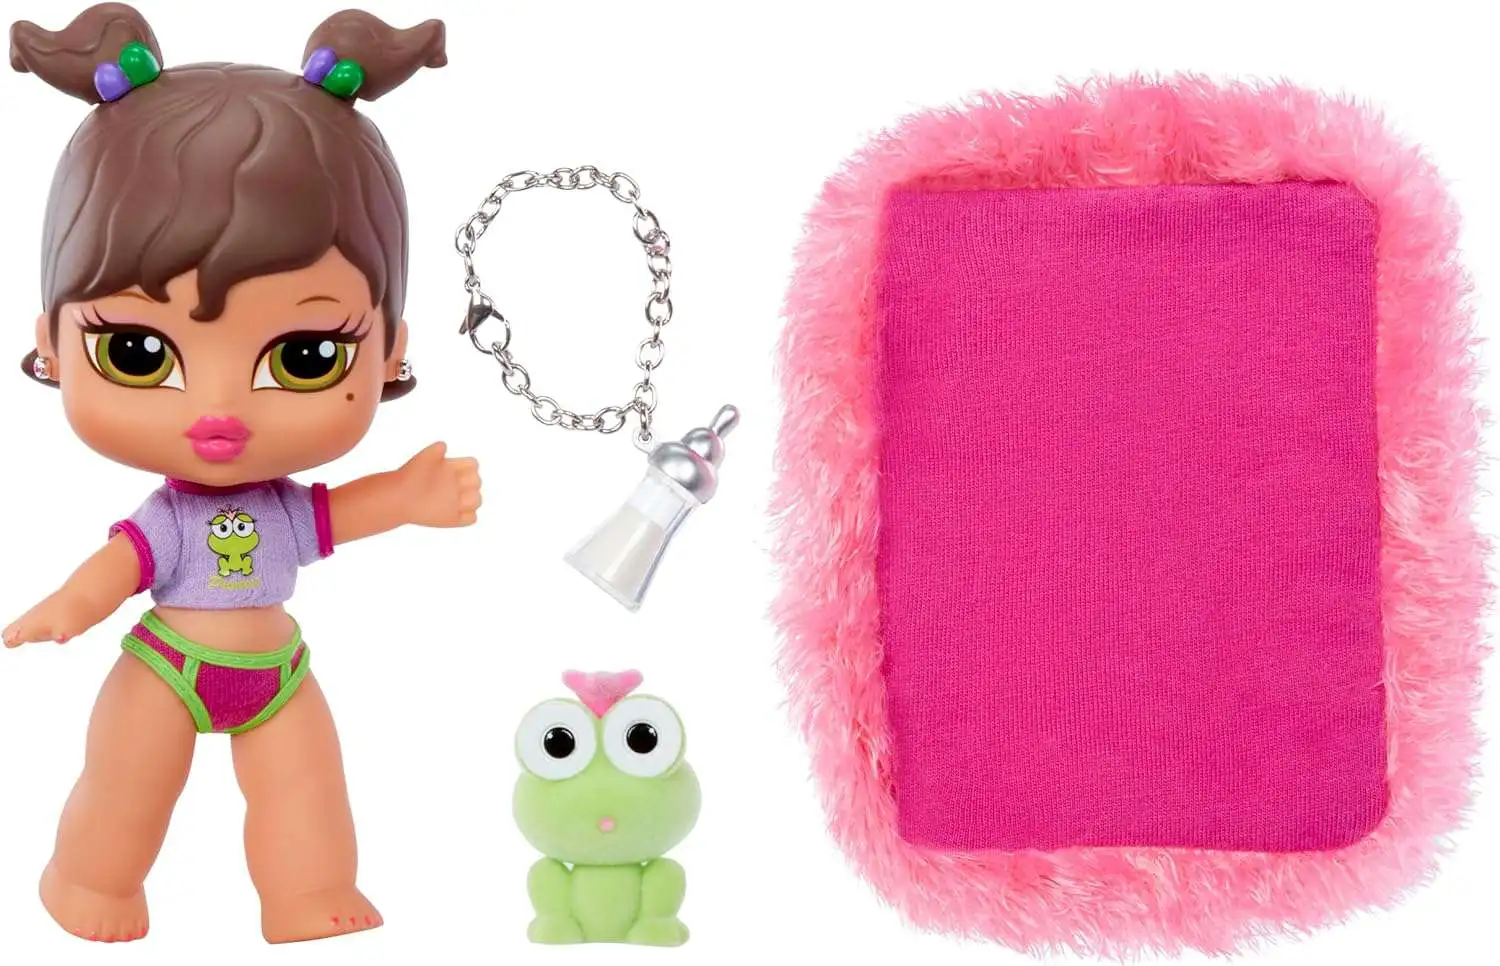 Bratz Babyz Yasmin with Pretty Princess Doll Pet MGA Entertainment - ToyWiz